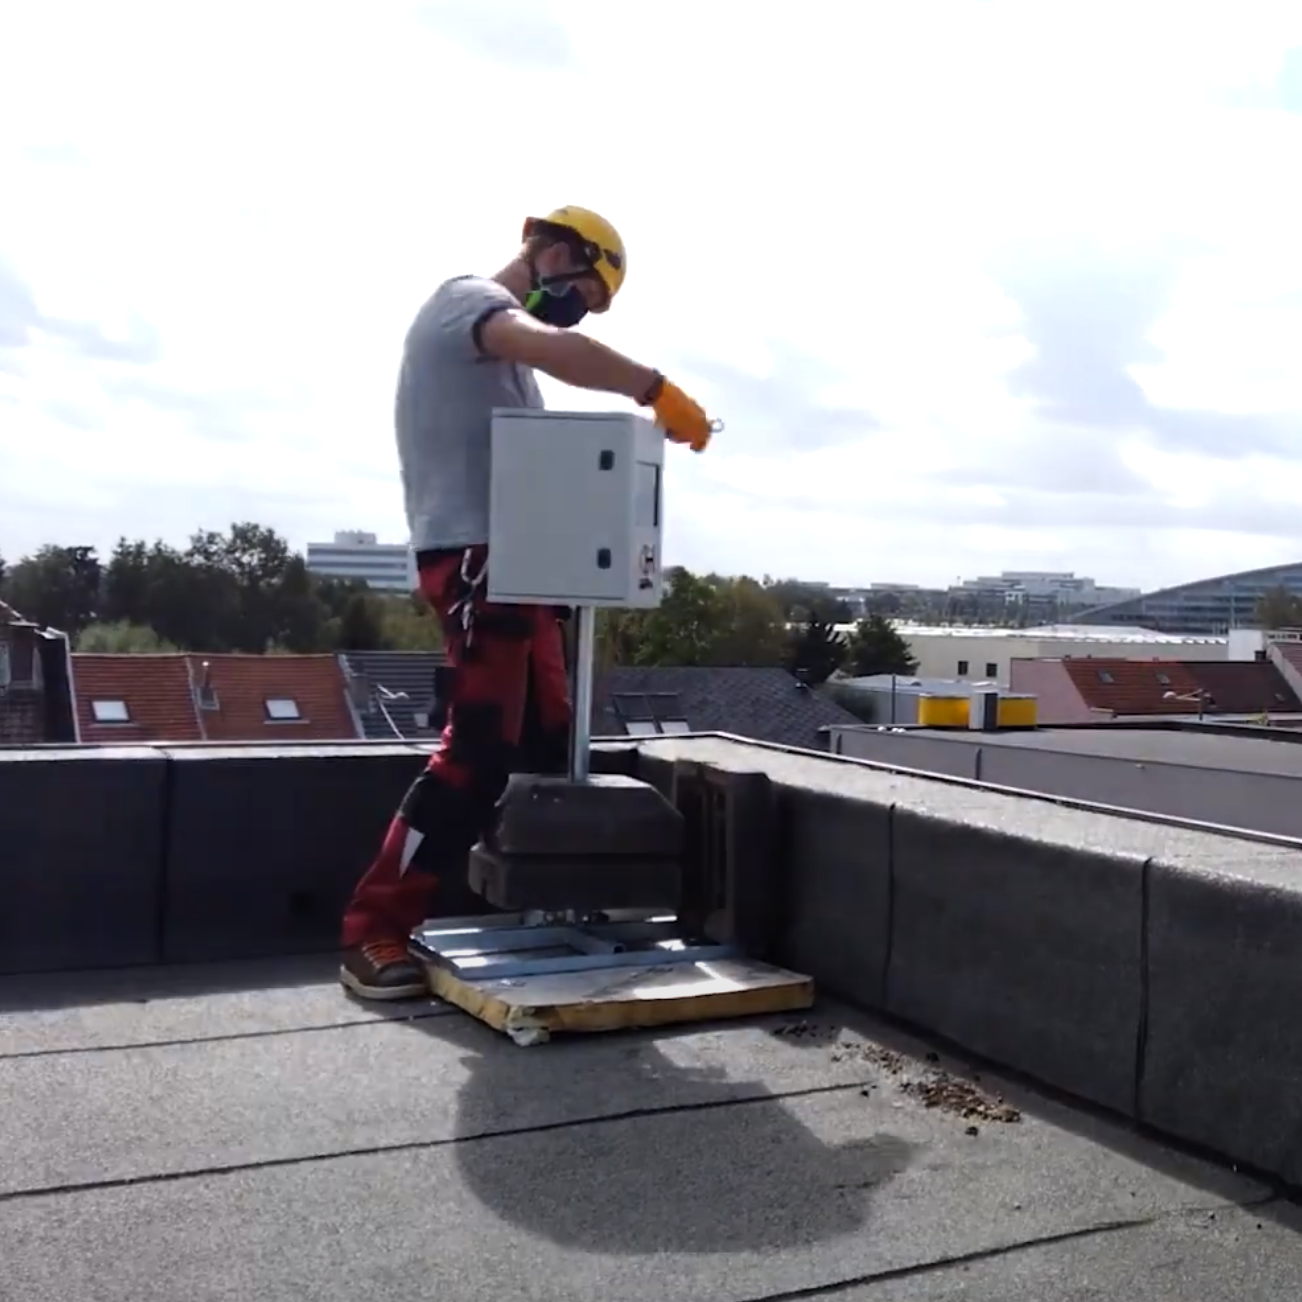 petit timelapse capsule vidéo en accéléré de la pose d'un caisson de timelapse alimenté par panneau solaire sur le toit d'un immeuble.